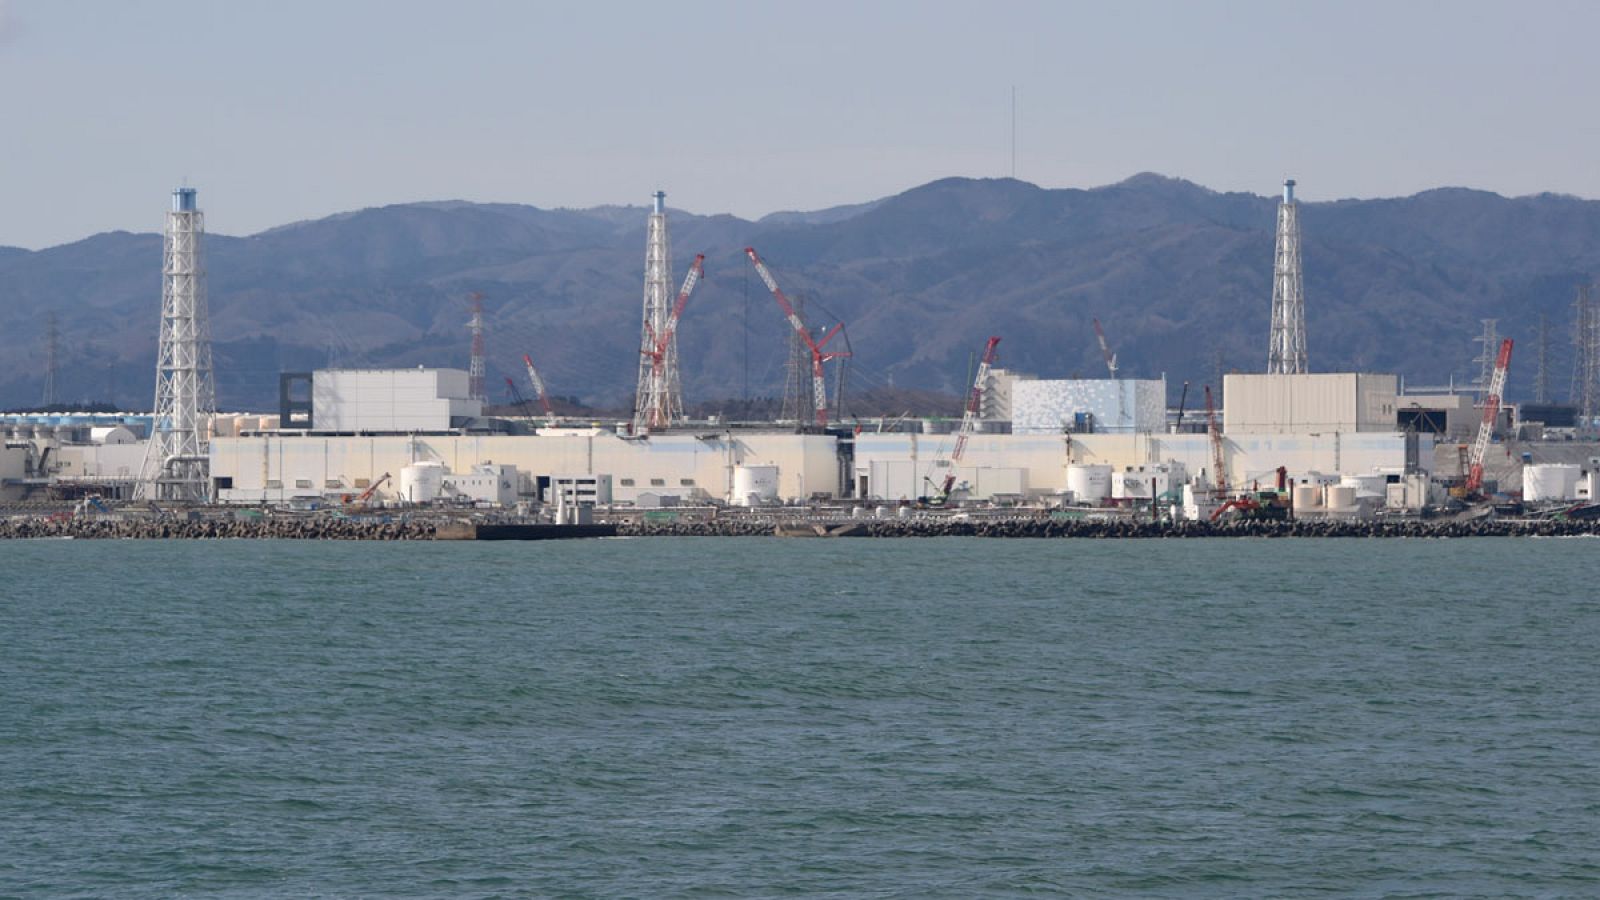 La planta nuclear de Fukushima vista desde uno de los barcos de Greenpeace.